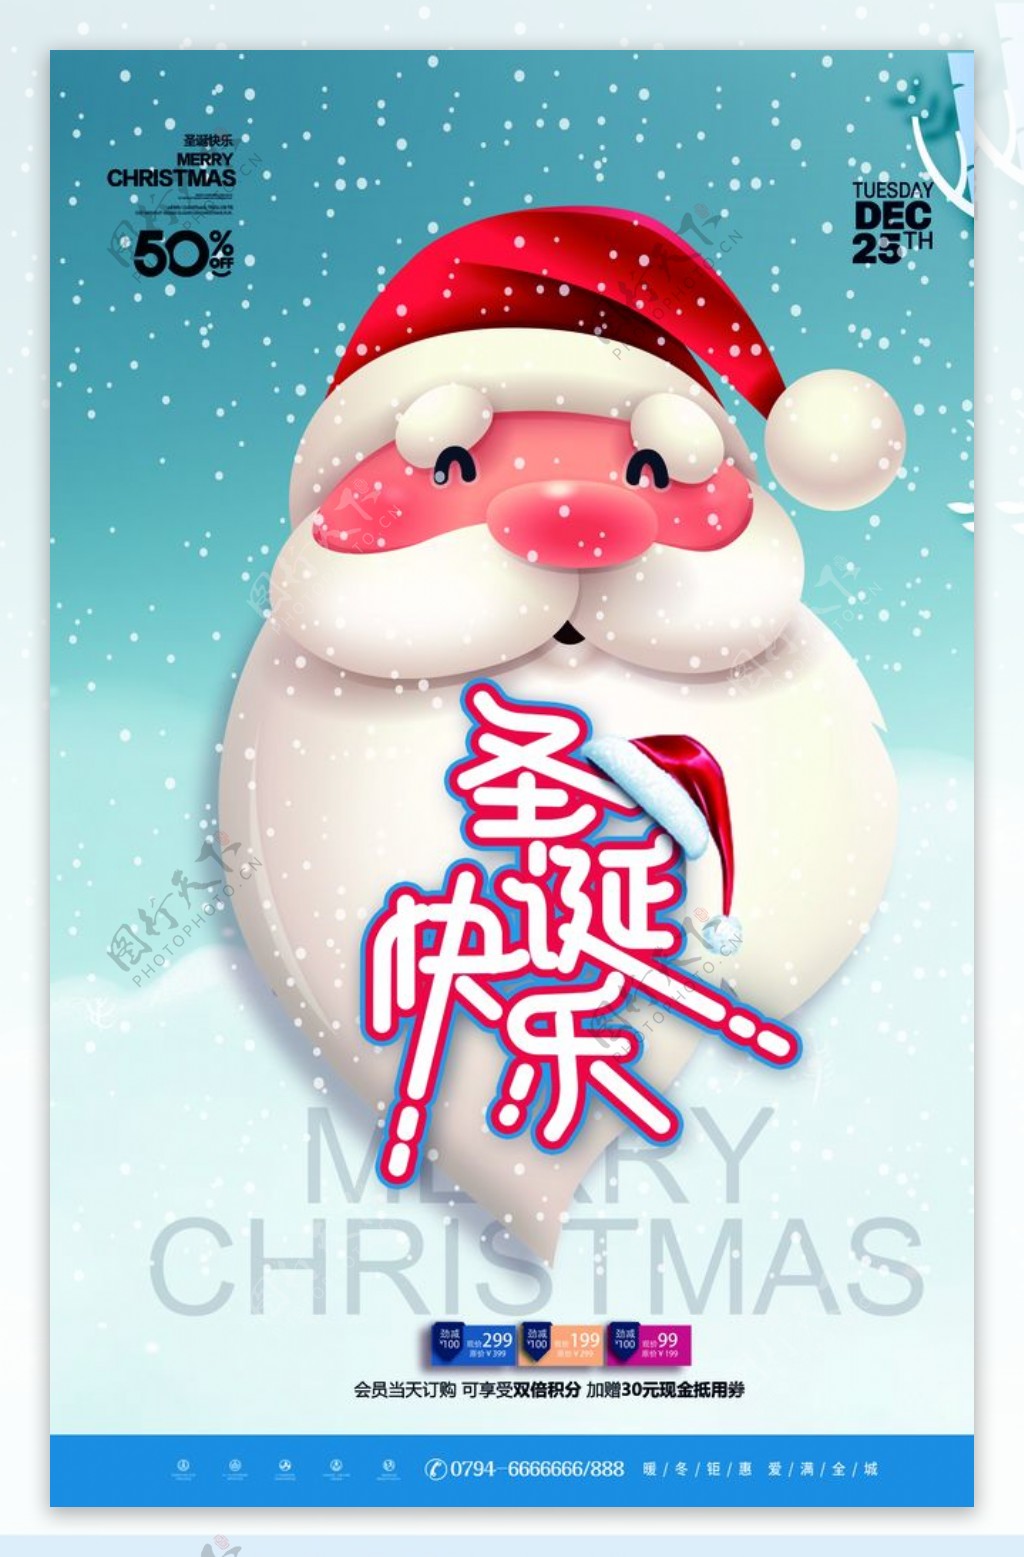 元旦圣诞节海报促销宣传